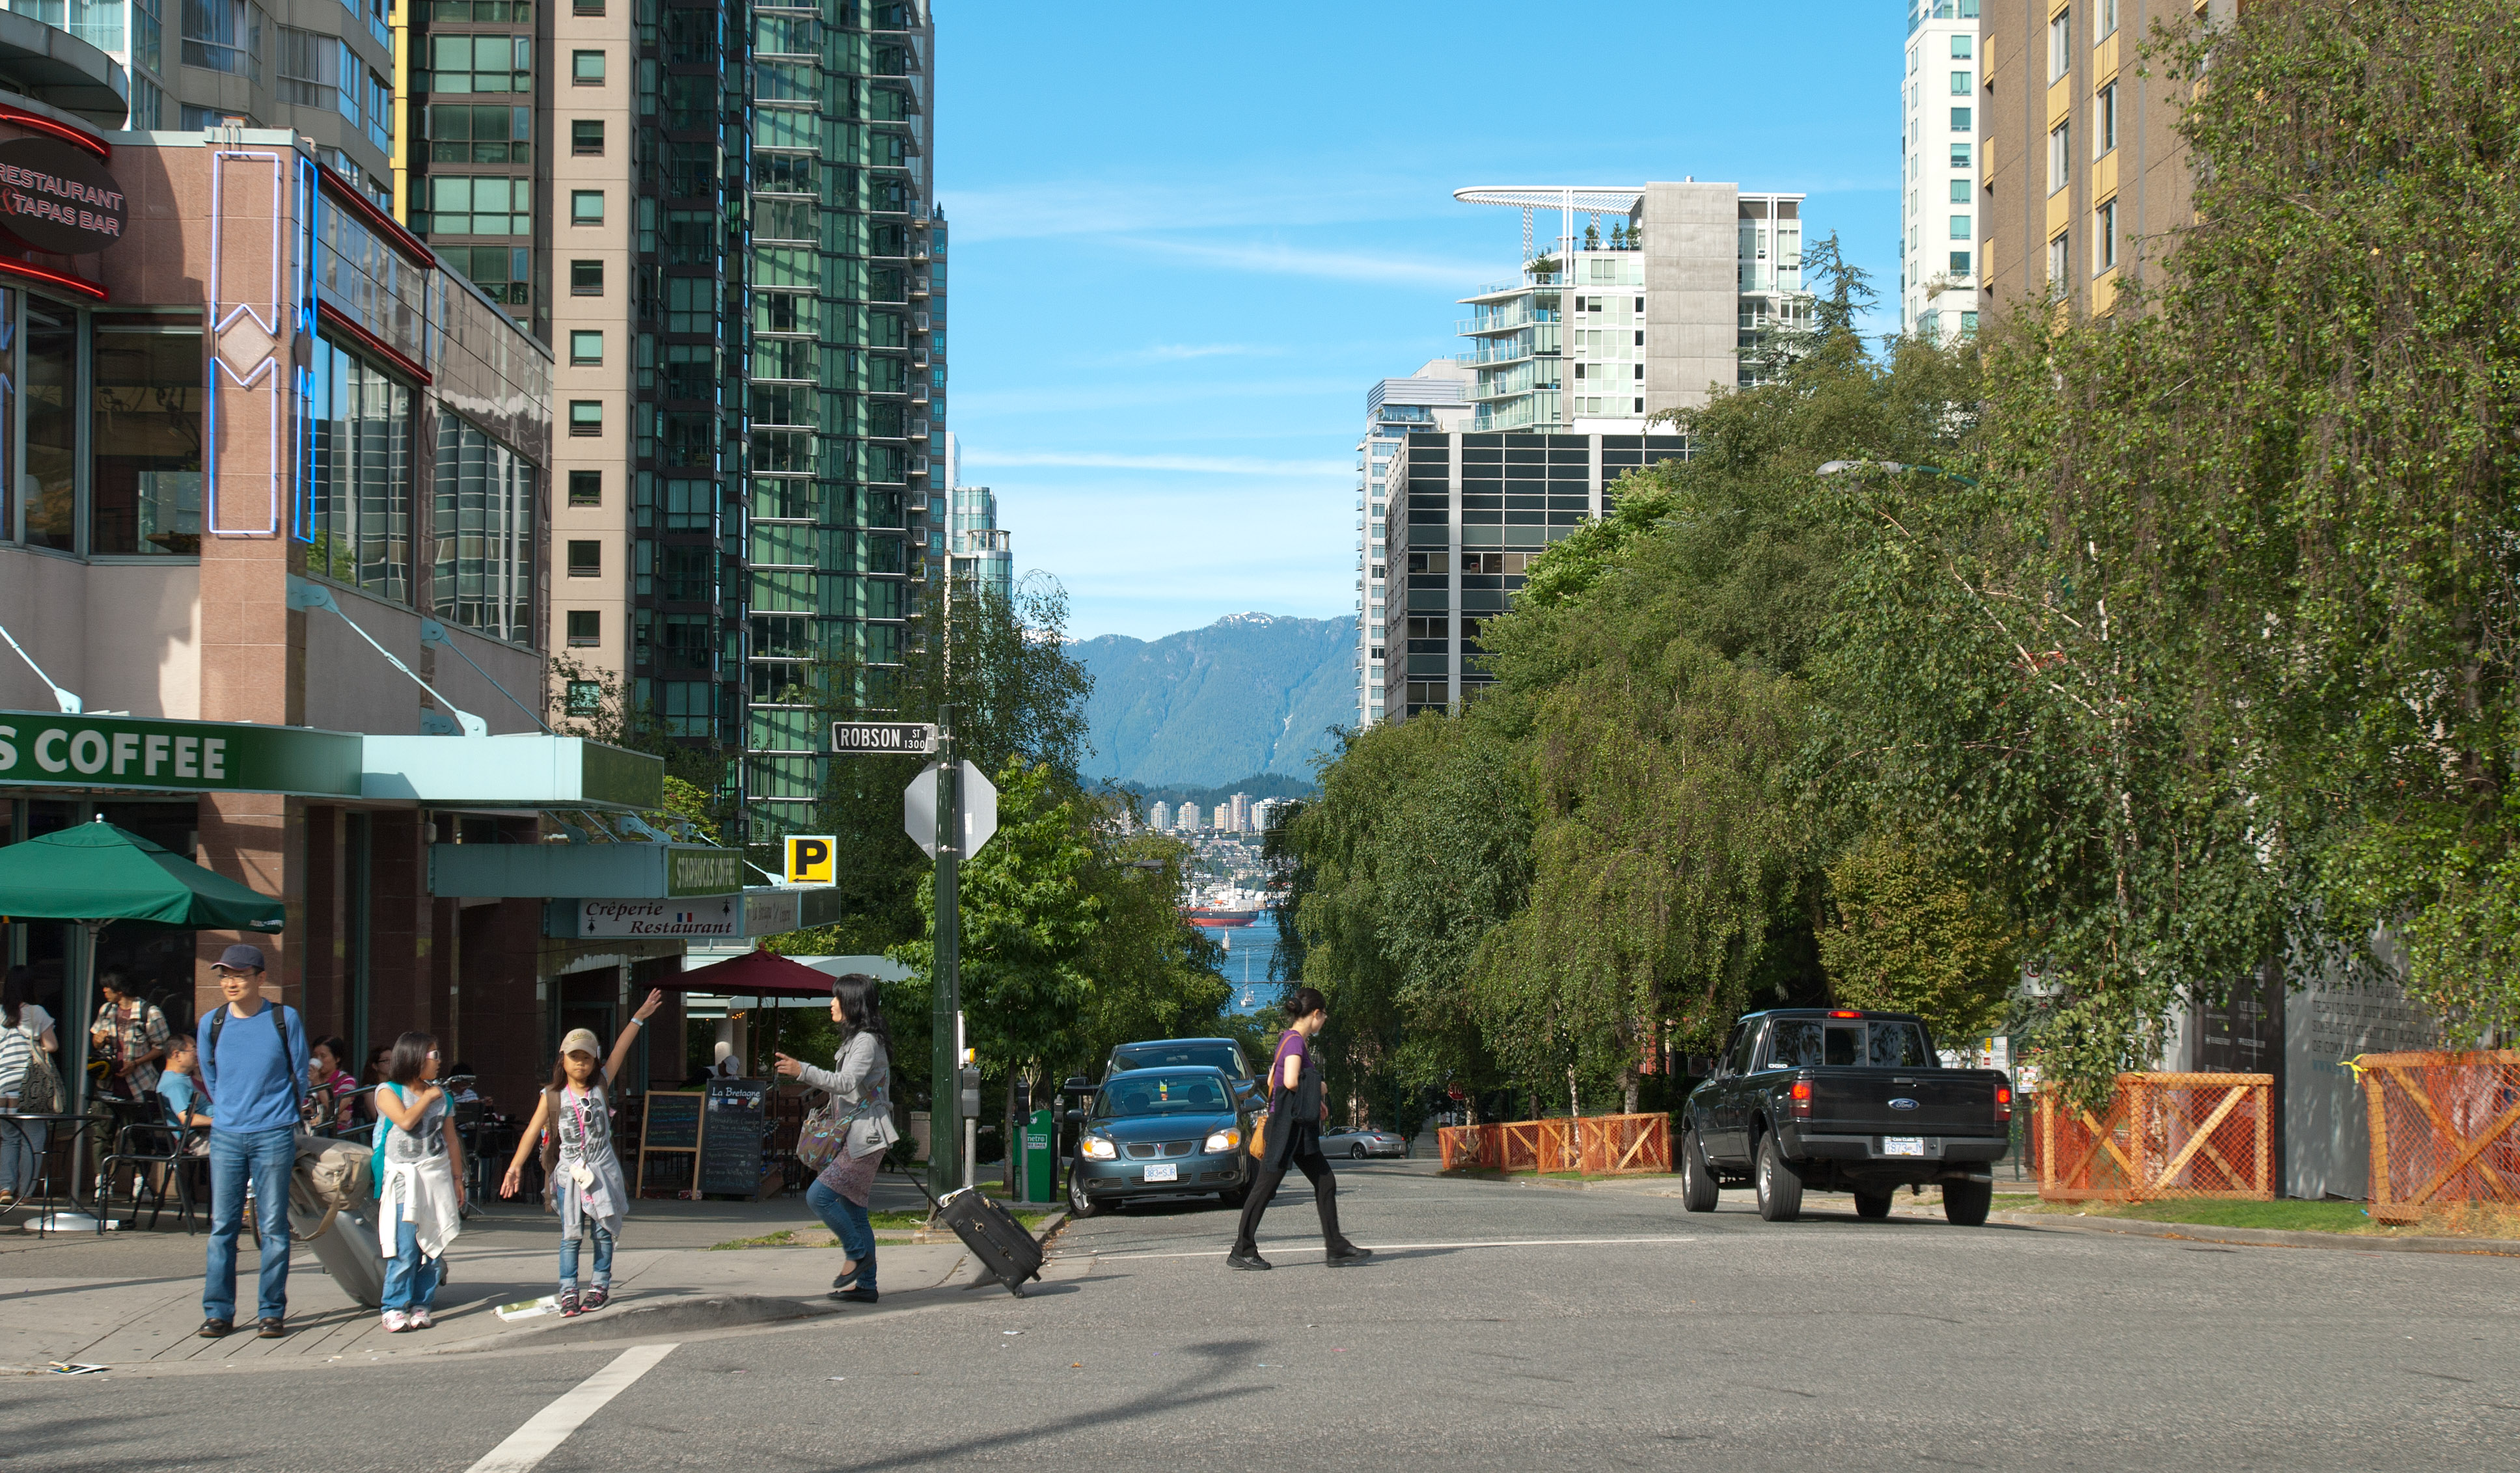 Interesting city scene in downtonw Vancouver.jpg